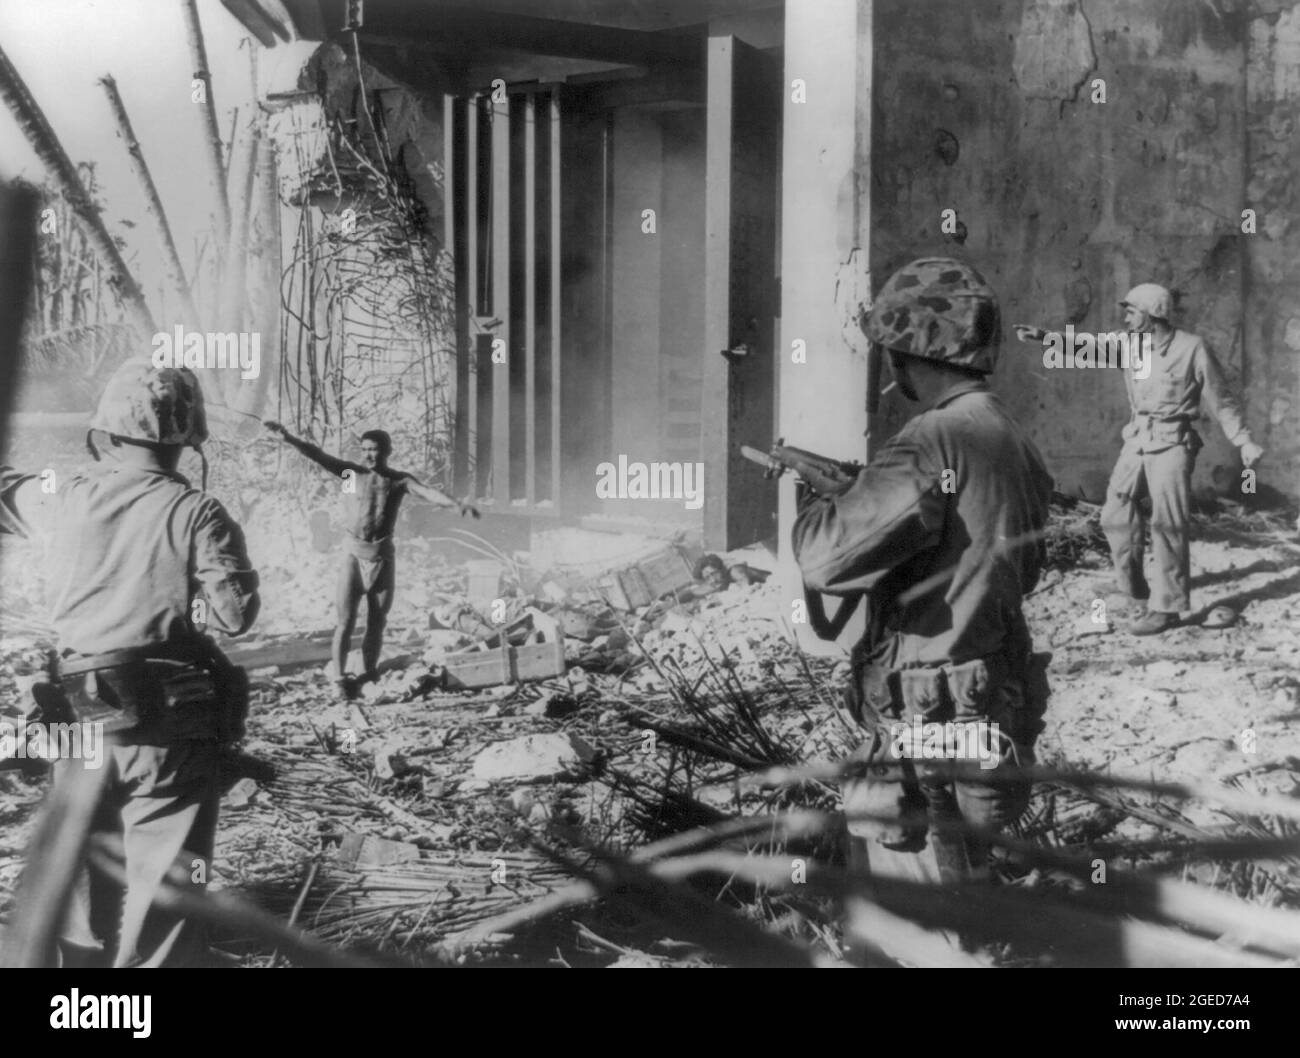 ÎLES MARSHALL - 02 FEBRARY 1944 - un soldat japonais se rend à trois soldats américains dans les îles Marshall - photo: Geopix/J Fabian Banque D'Images